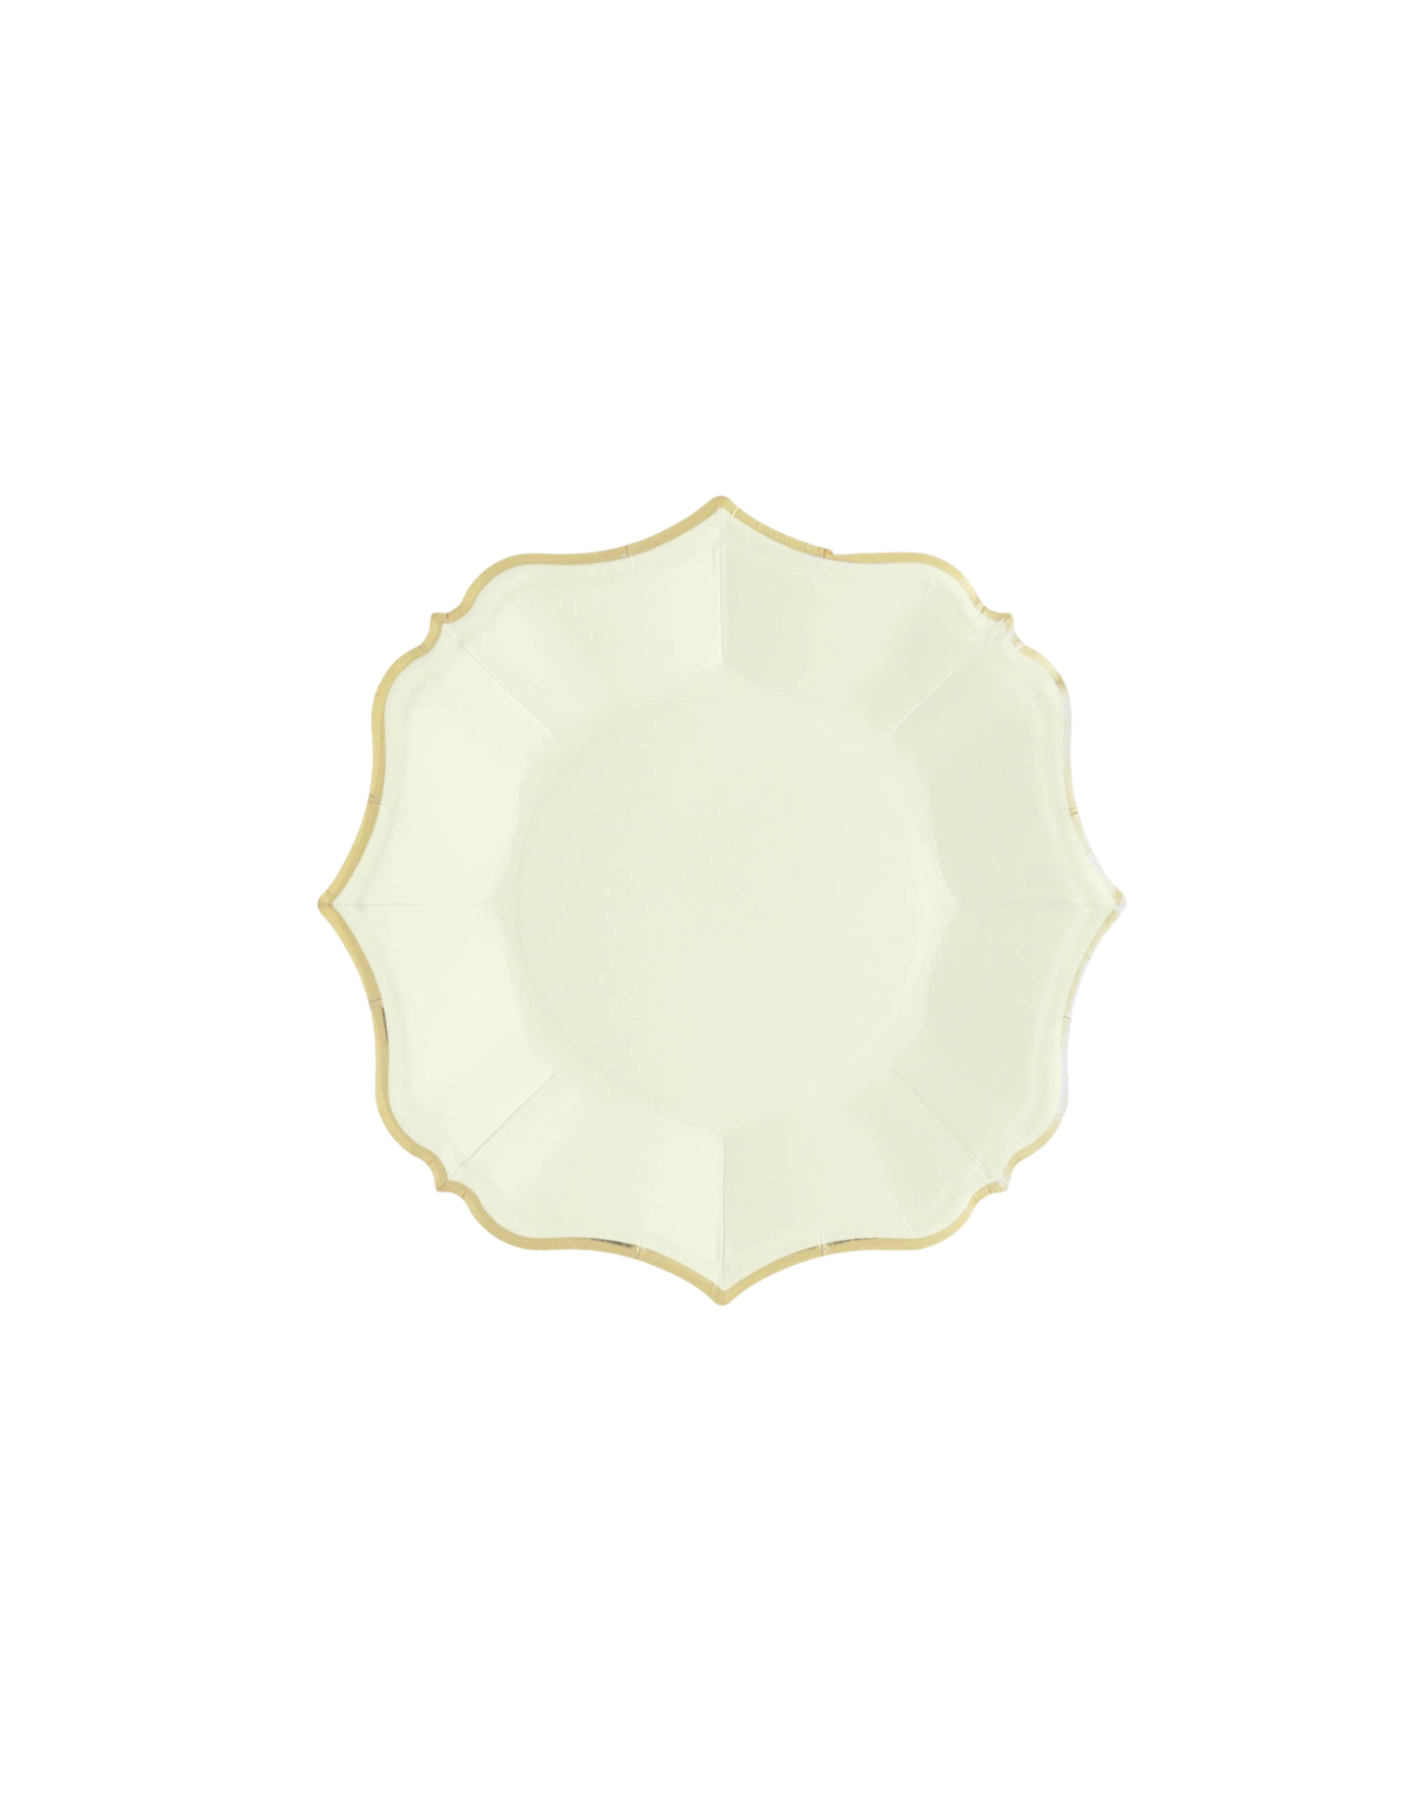 Cream Dessert Plates (8)